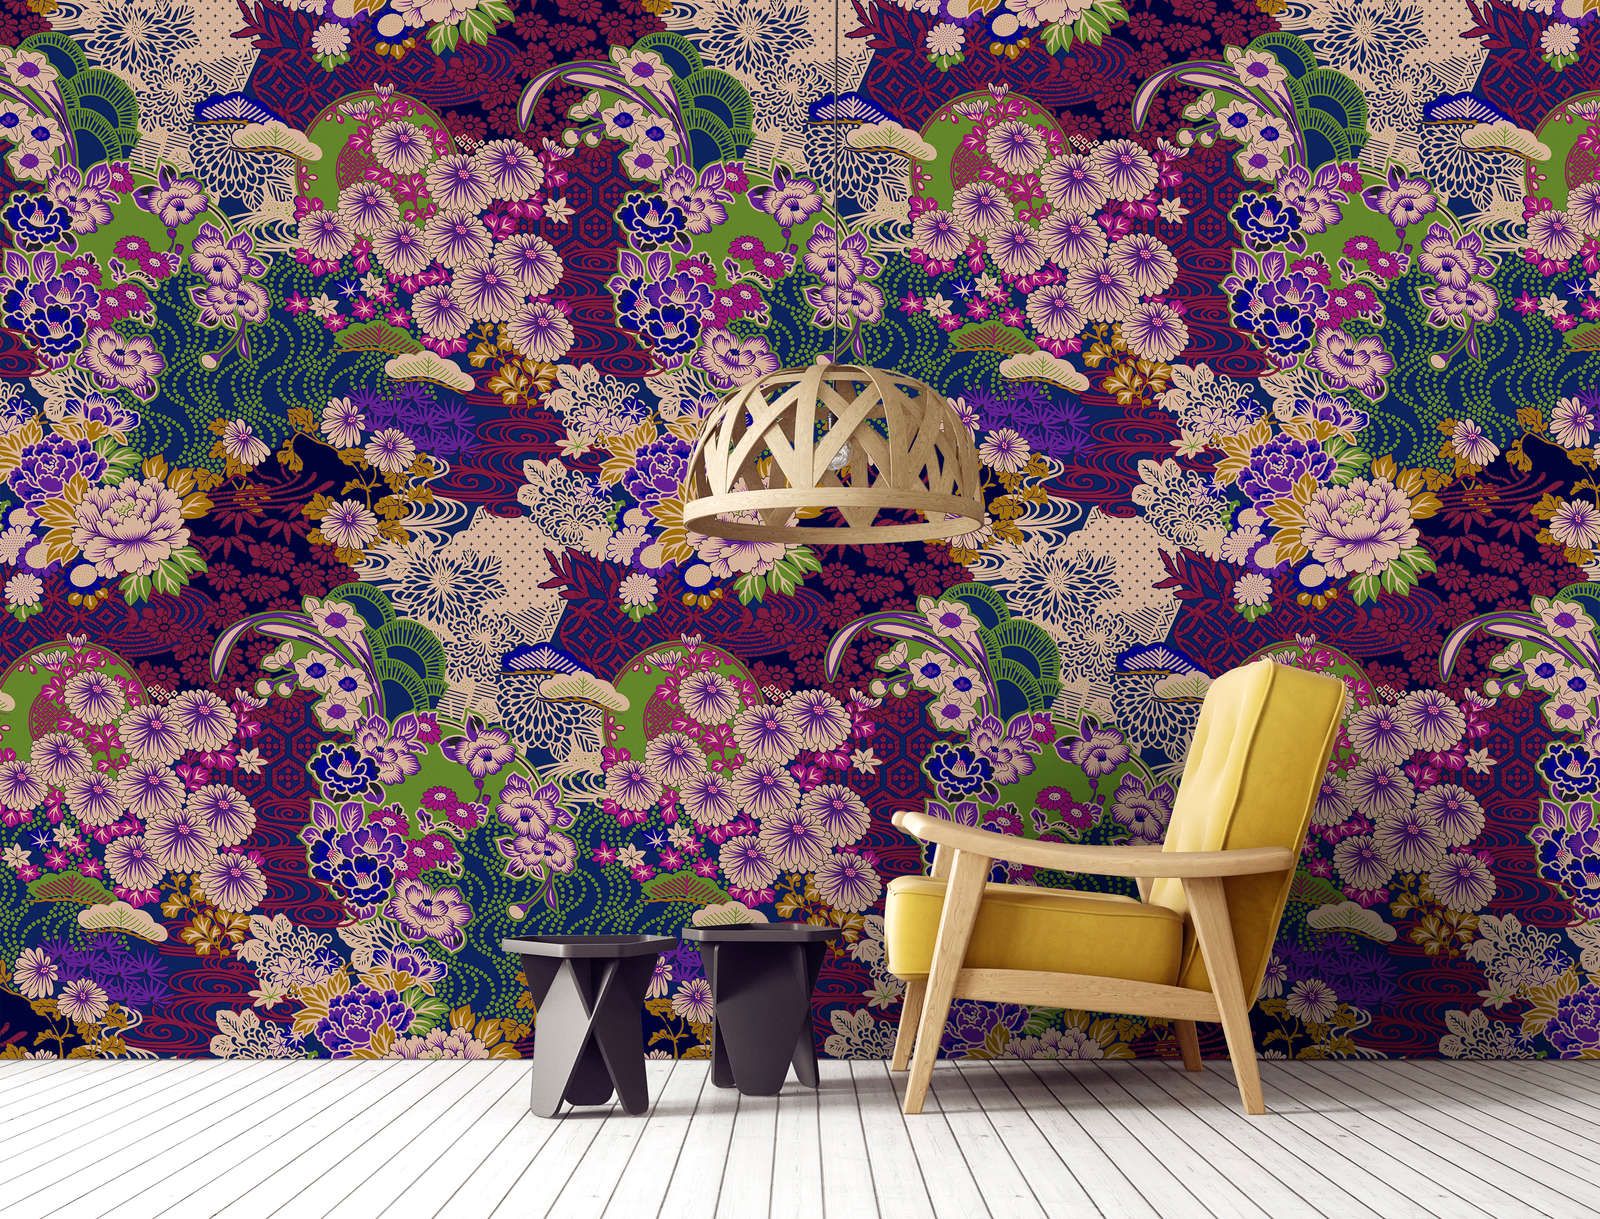             papier peint en papier »kimo 2« - art floral abstrait - violet, vert | Intissé lisse, légèrement nacré
        